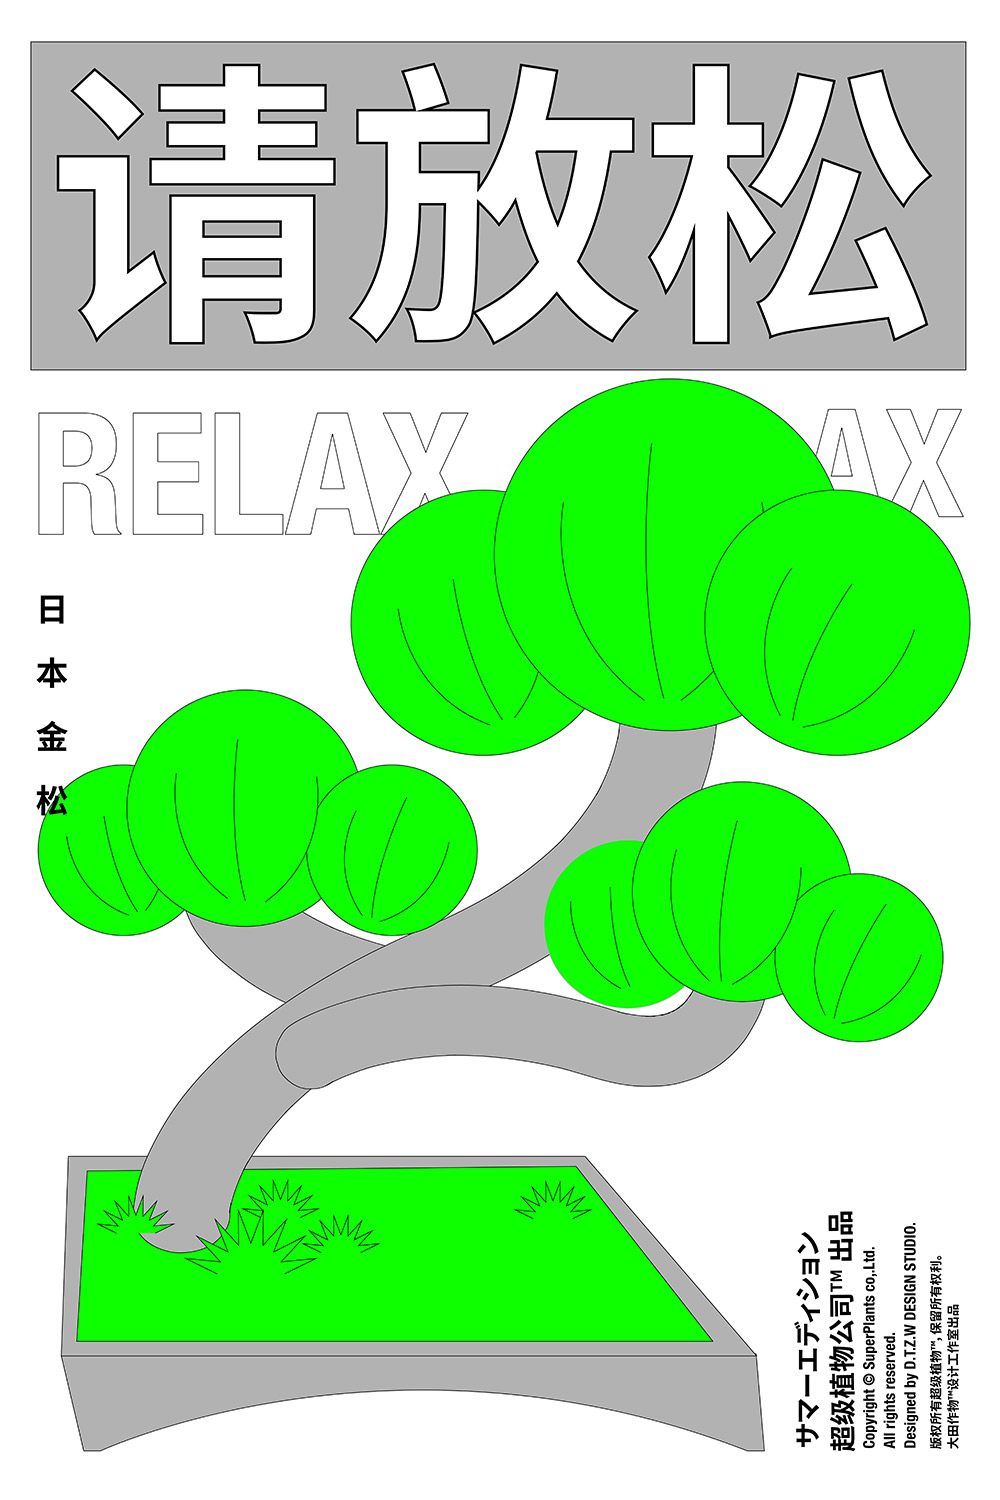 贩卖绿色！18张超级植物公司海报设计